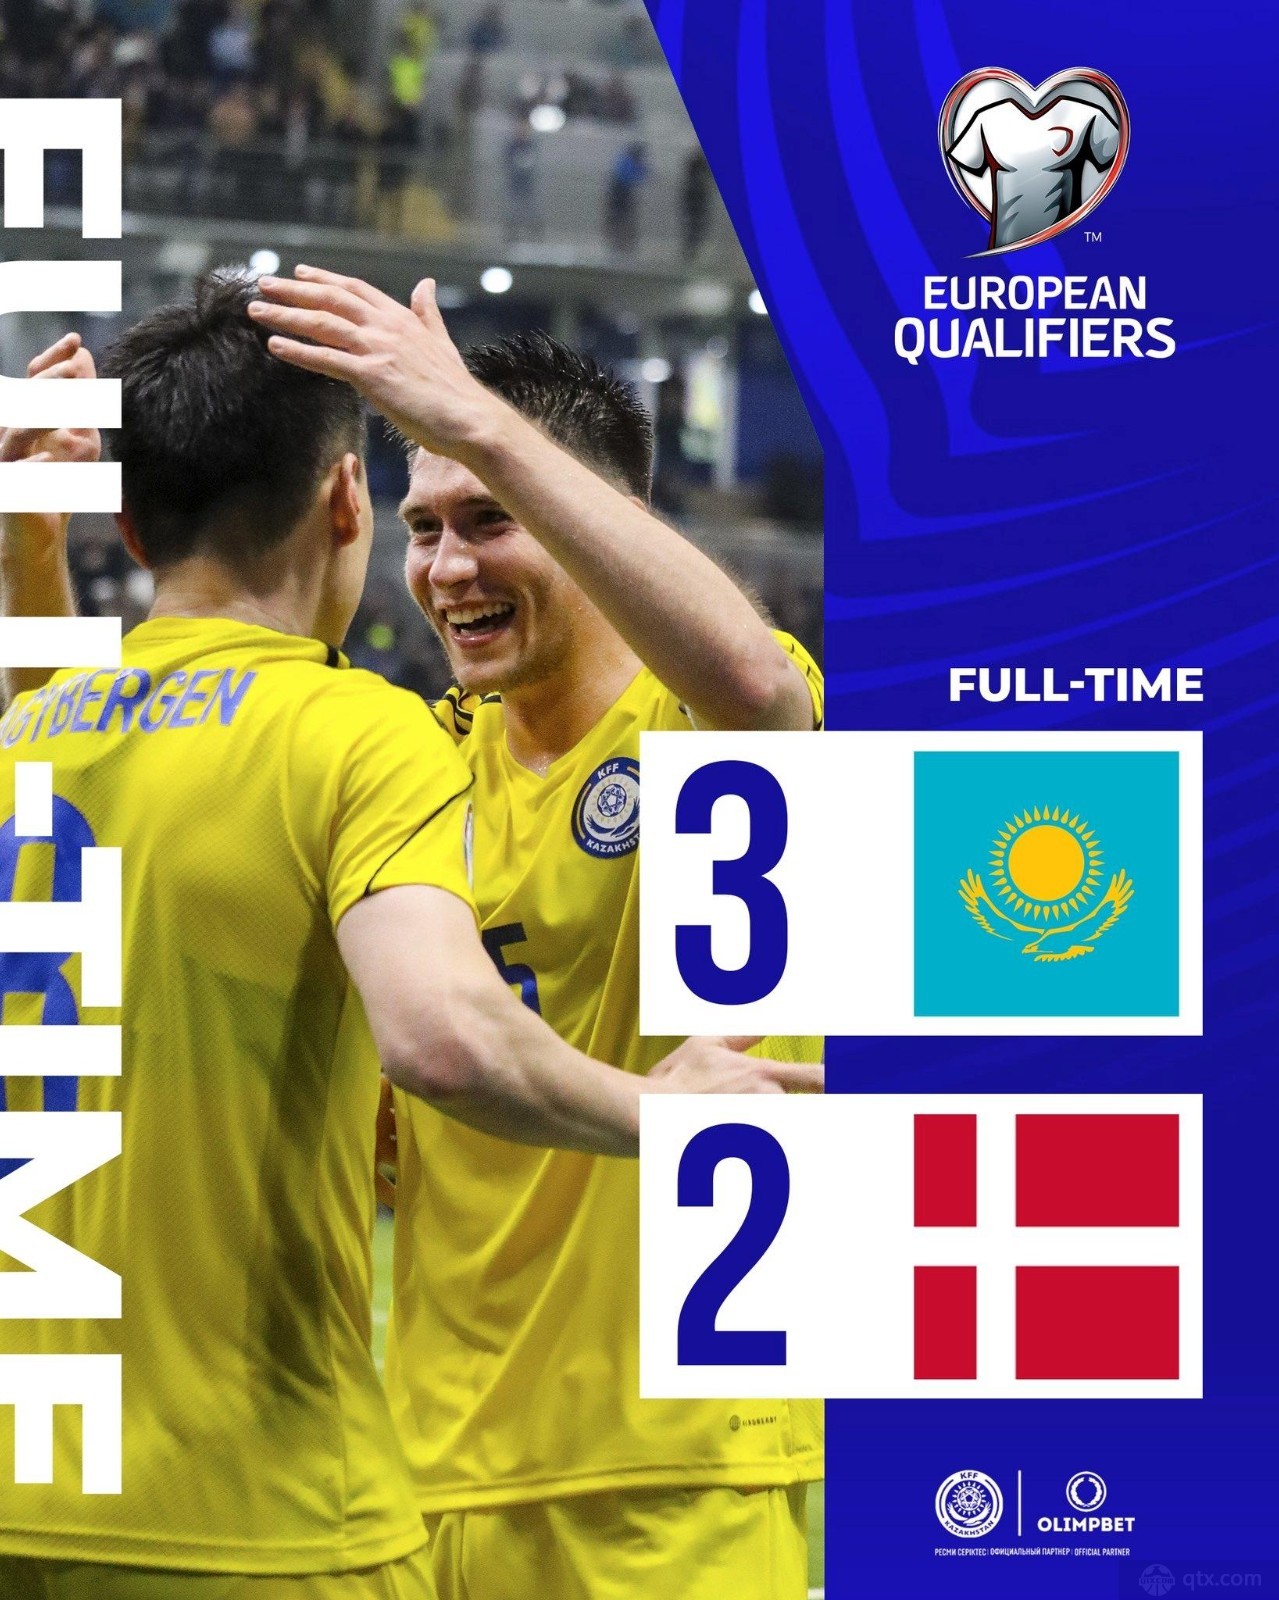 欧洲杯哈萨克斯坦队3-2丹麦队 16分钟内连扳三球 安贝托夫攻入绝杀